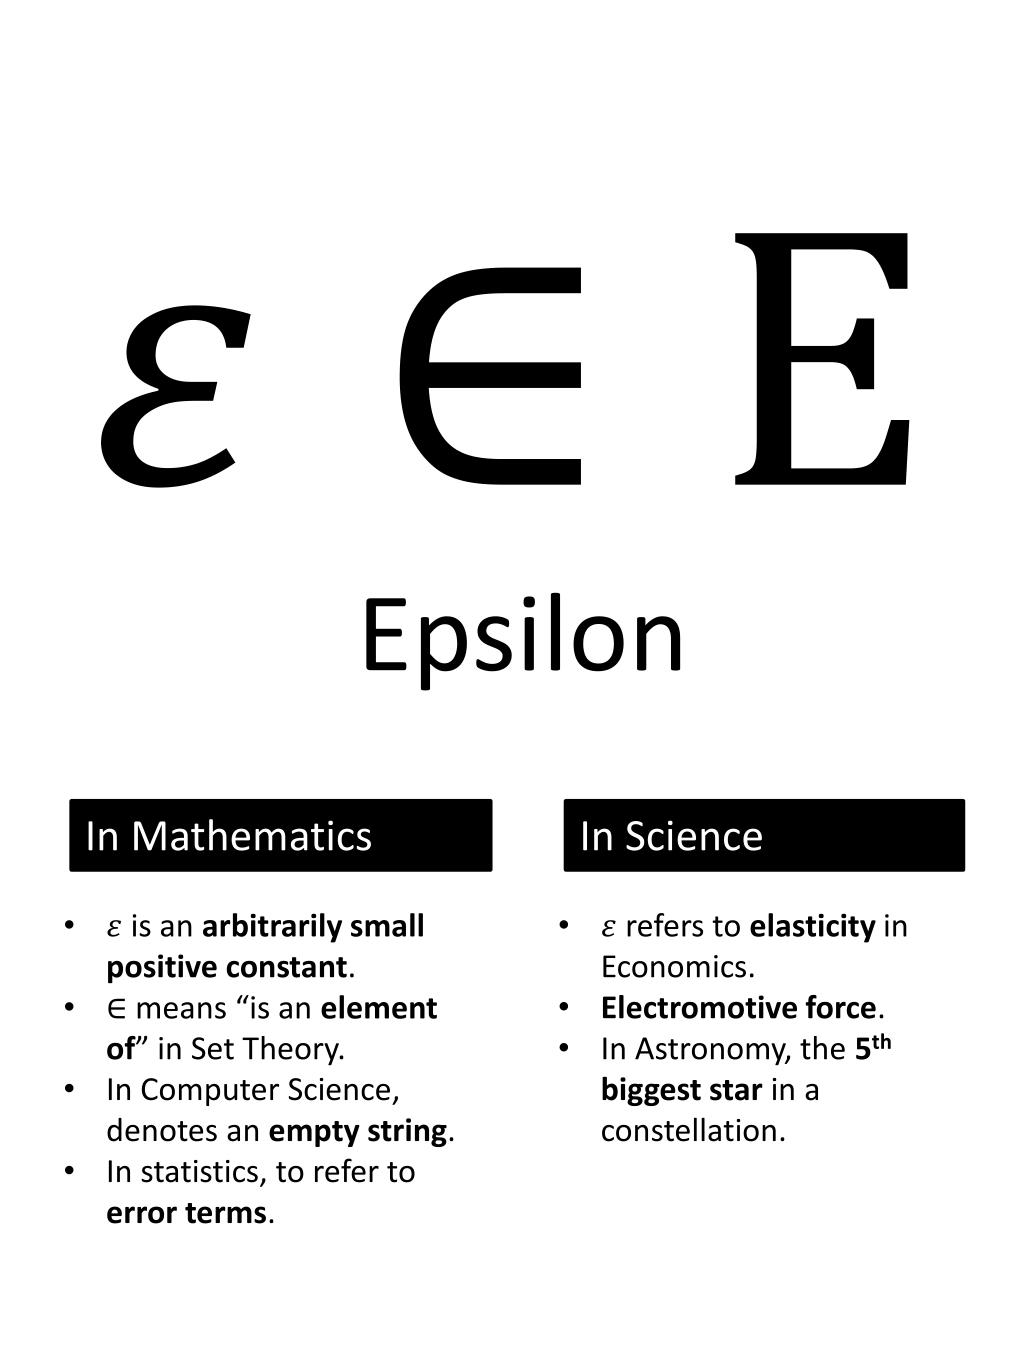 Альфа омега эпсилон. Епсела. Эпсилон. Эпсилон в математике значение. Эпсилон 0 в математике.